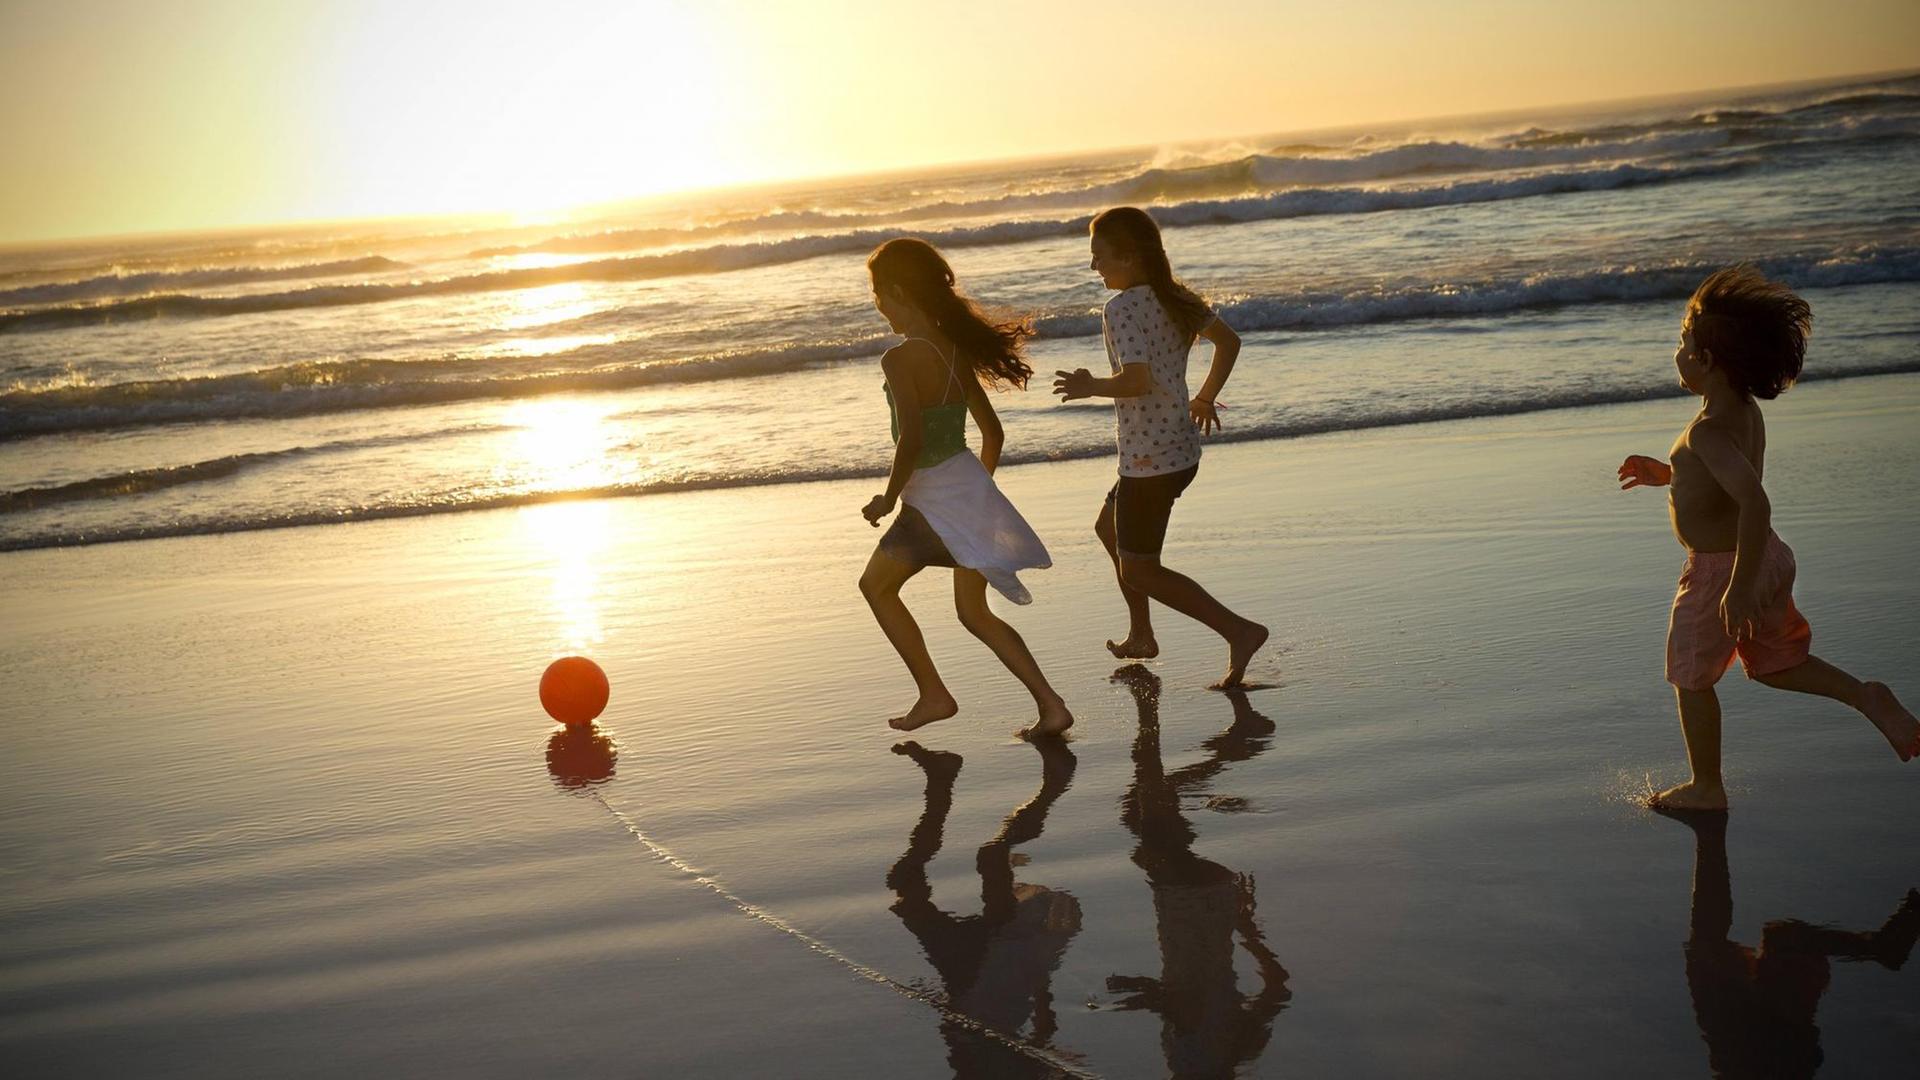 Kinder spielen am Strand im Sonnenuntergang mit einem Ball.